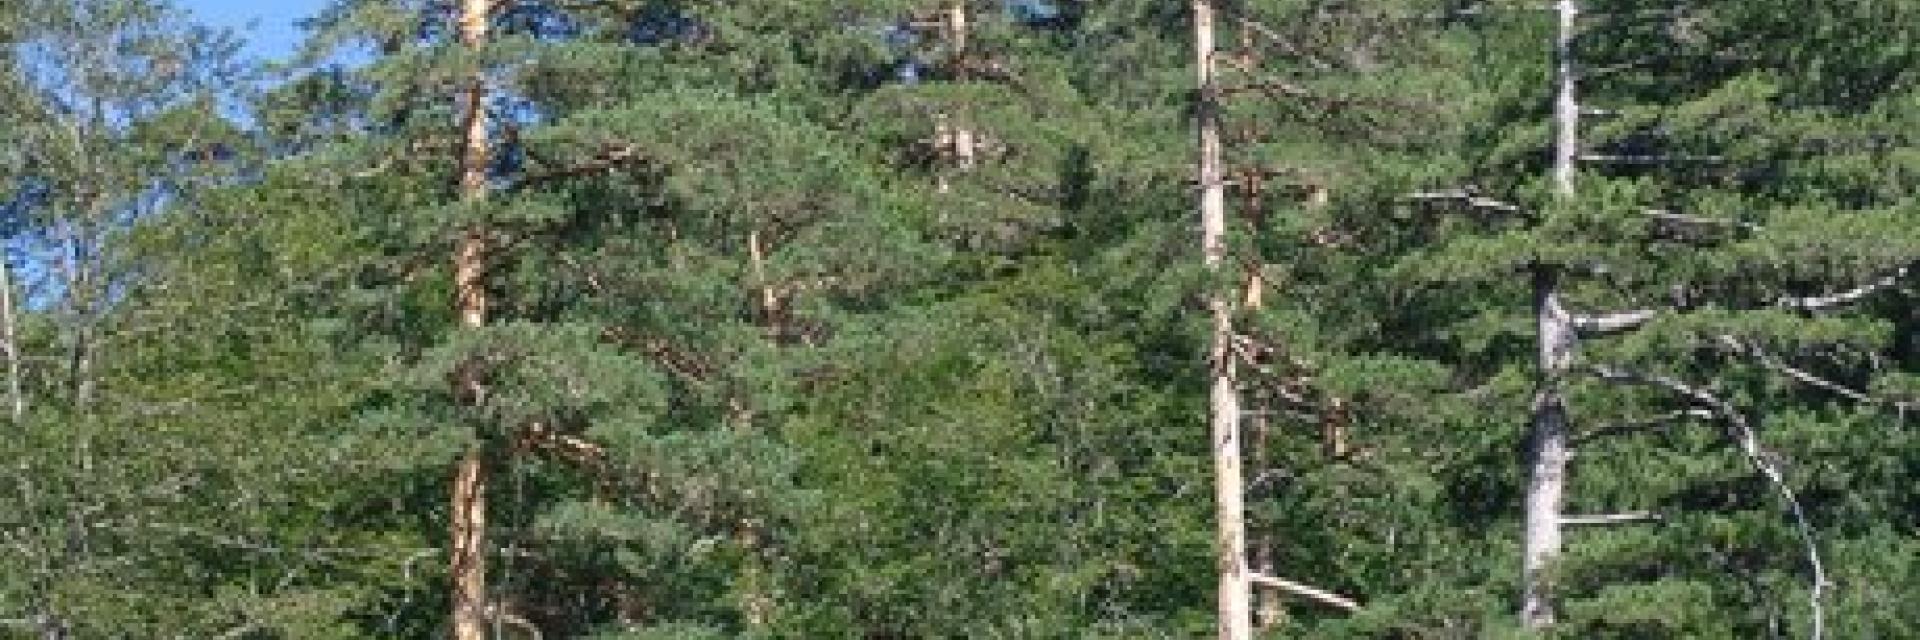 Sarıçam (Pinus sylvestris L.)